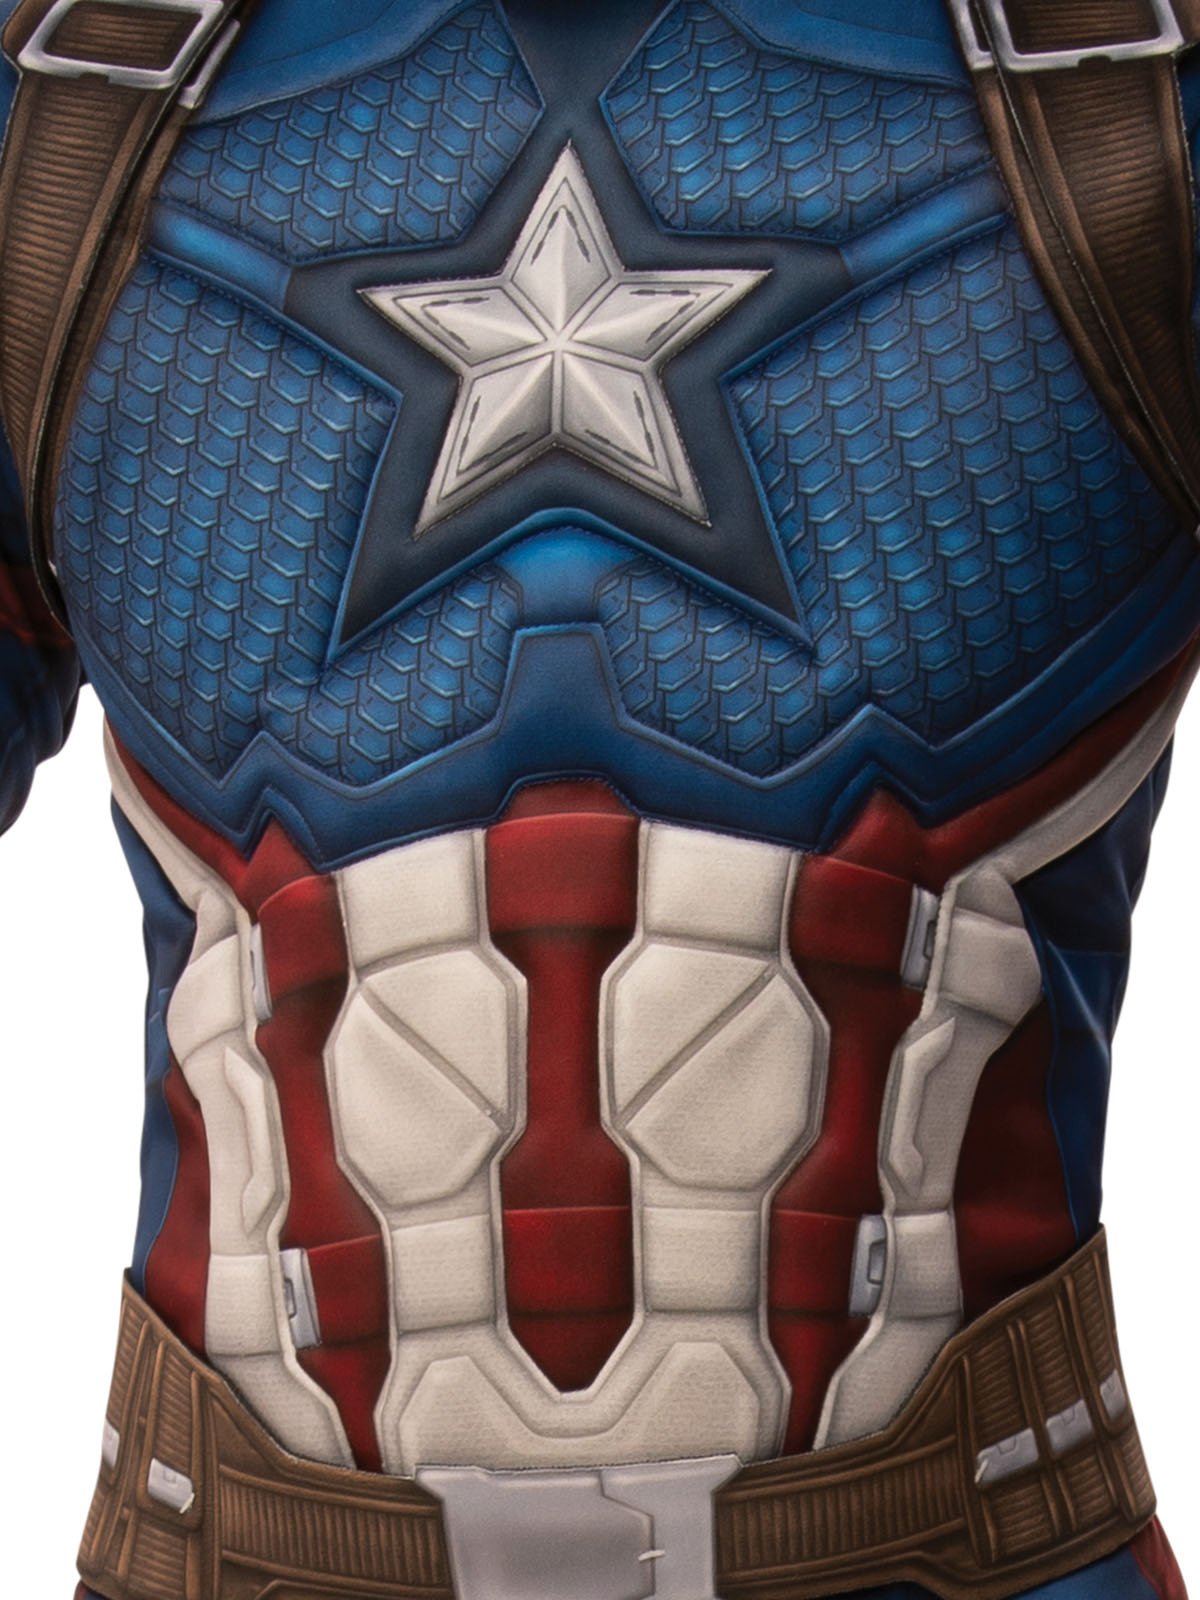 Captain America Deluxe Costume for Kids - Marvel Avengers: Endgame